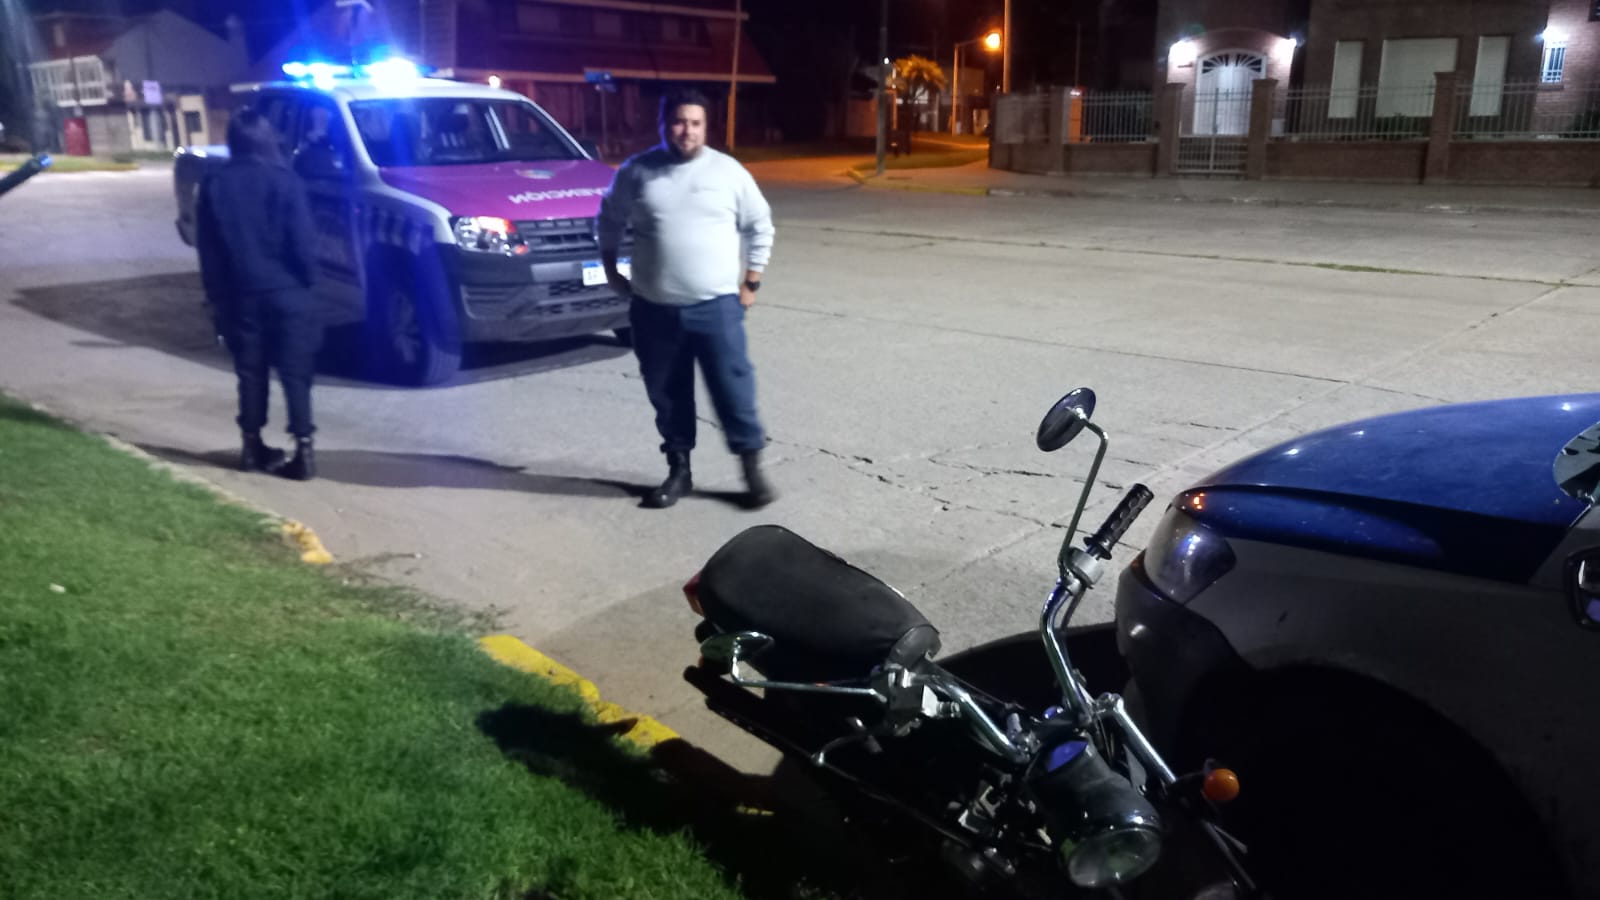 Otro rápido accionar de operador municipal sirvió para recuperar moto robada y prendas de vestir